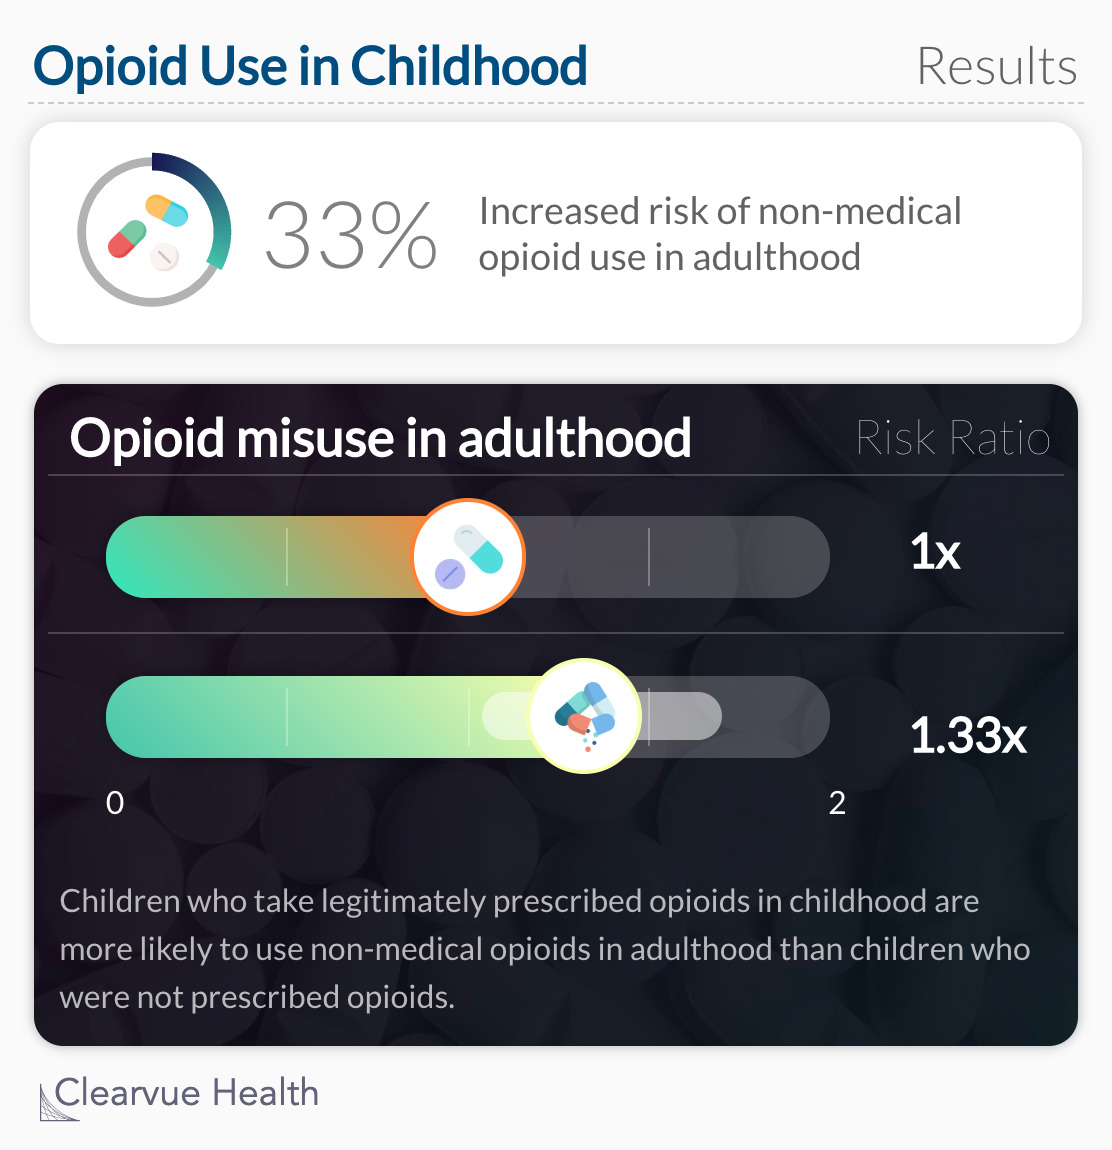 Opioid misuse in adulthood